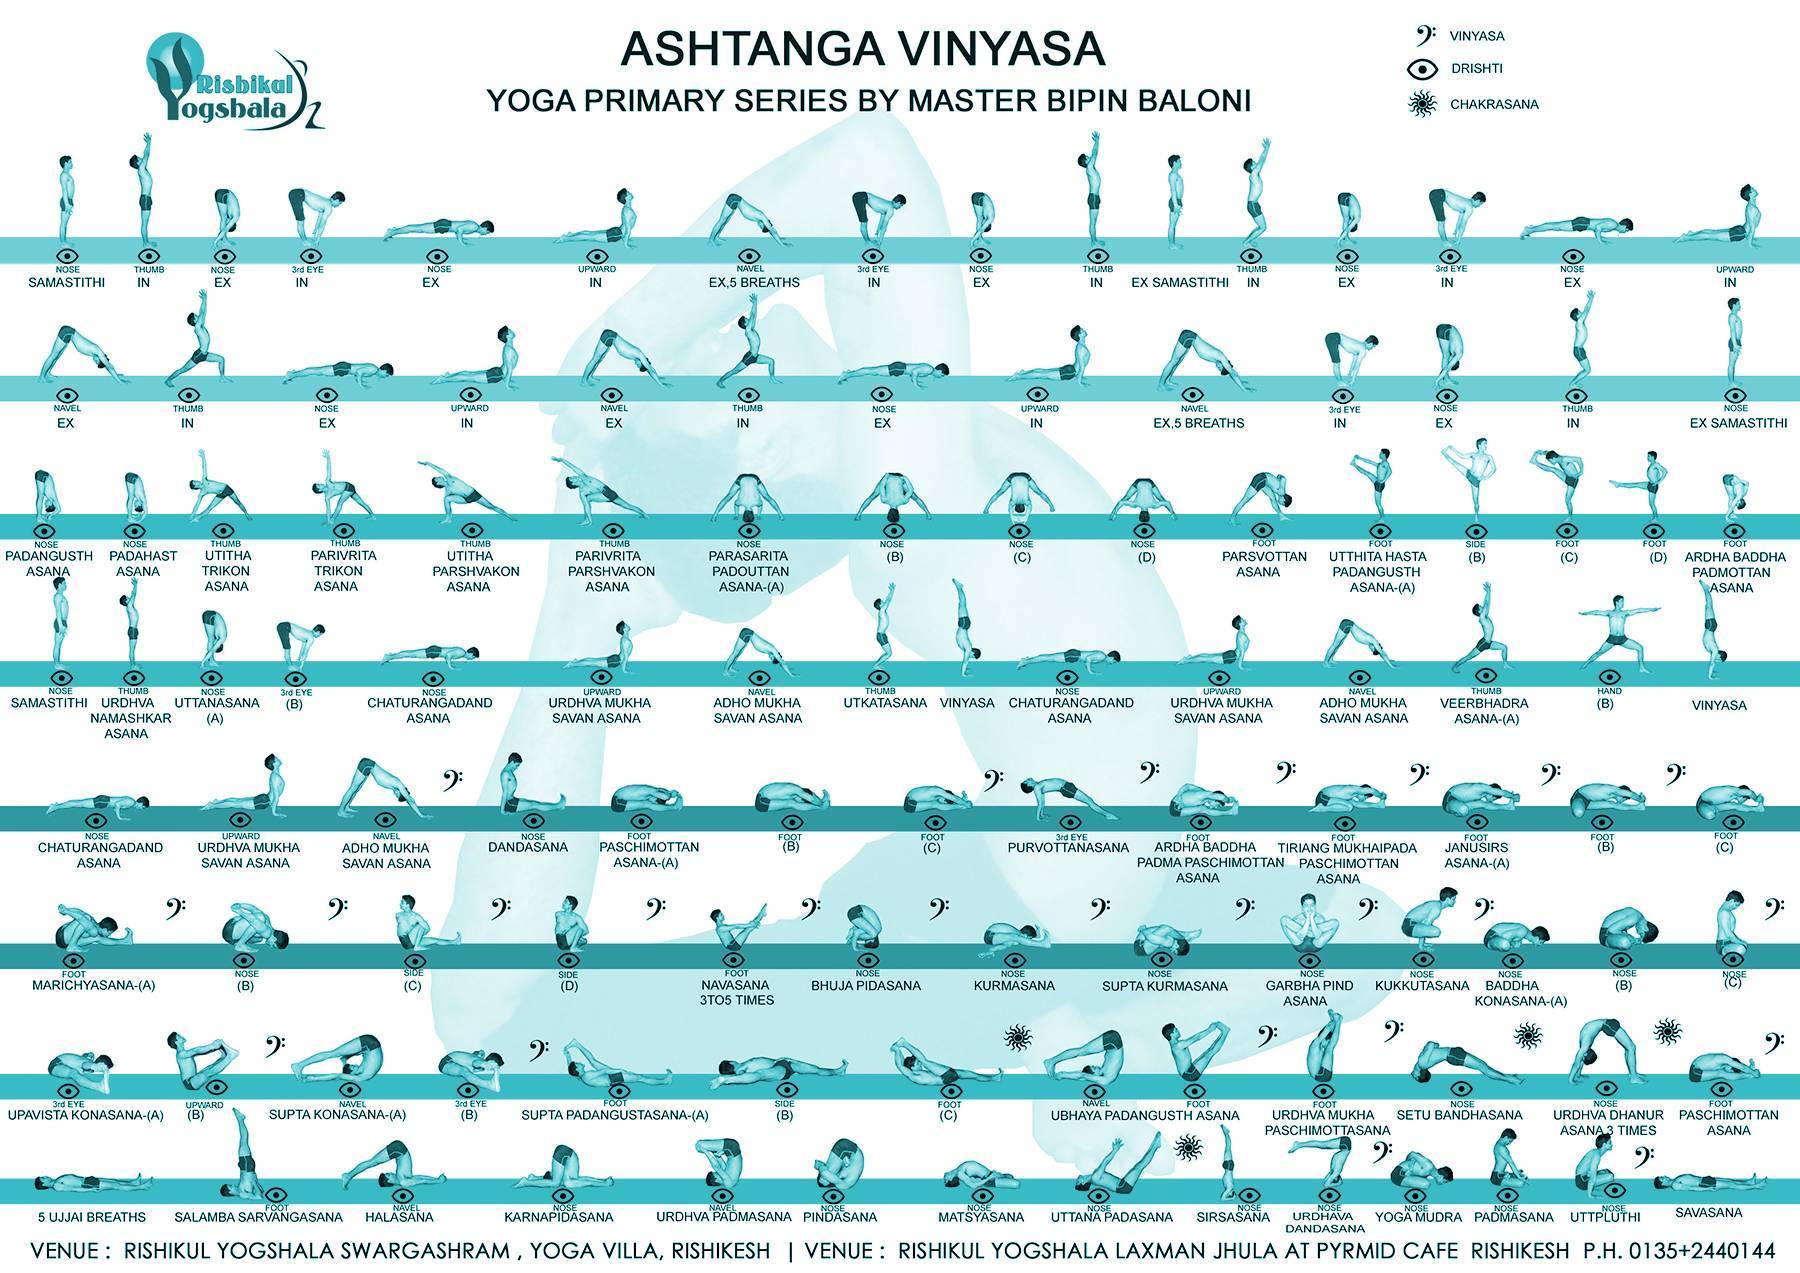 Аштанга-виньяса йога - суть методики и структура занятий